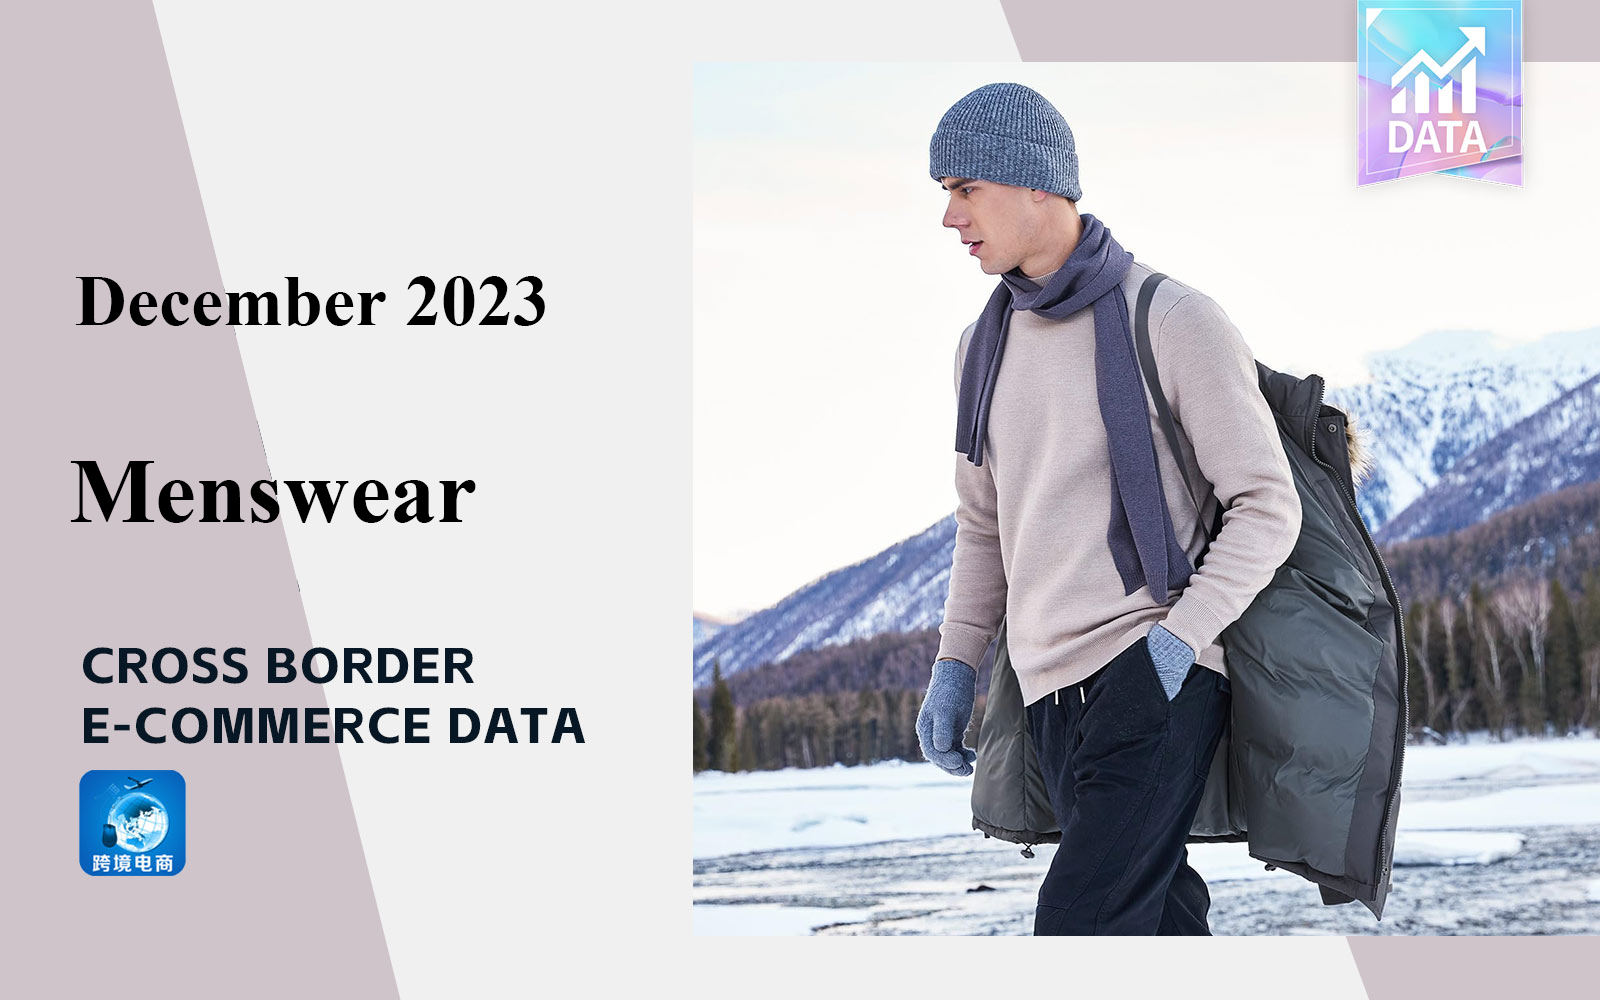 The Data Analysis of Cross-border E-commerce for Menswear in December